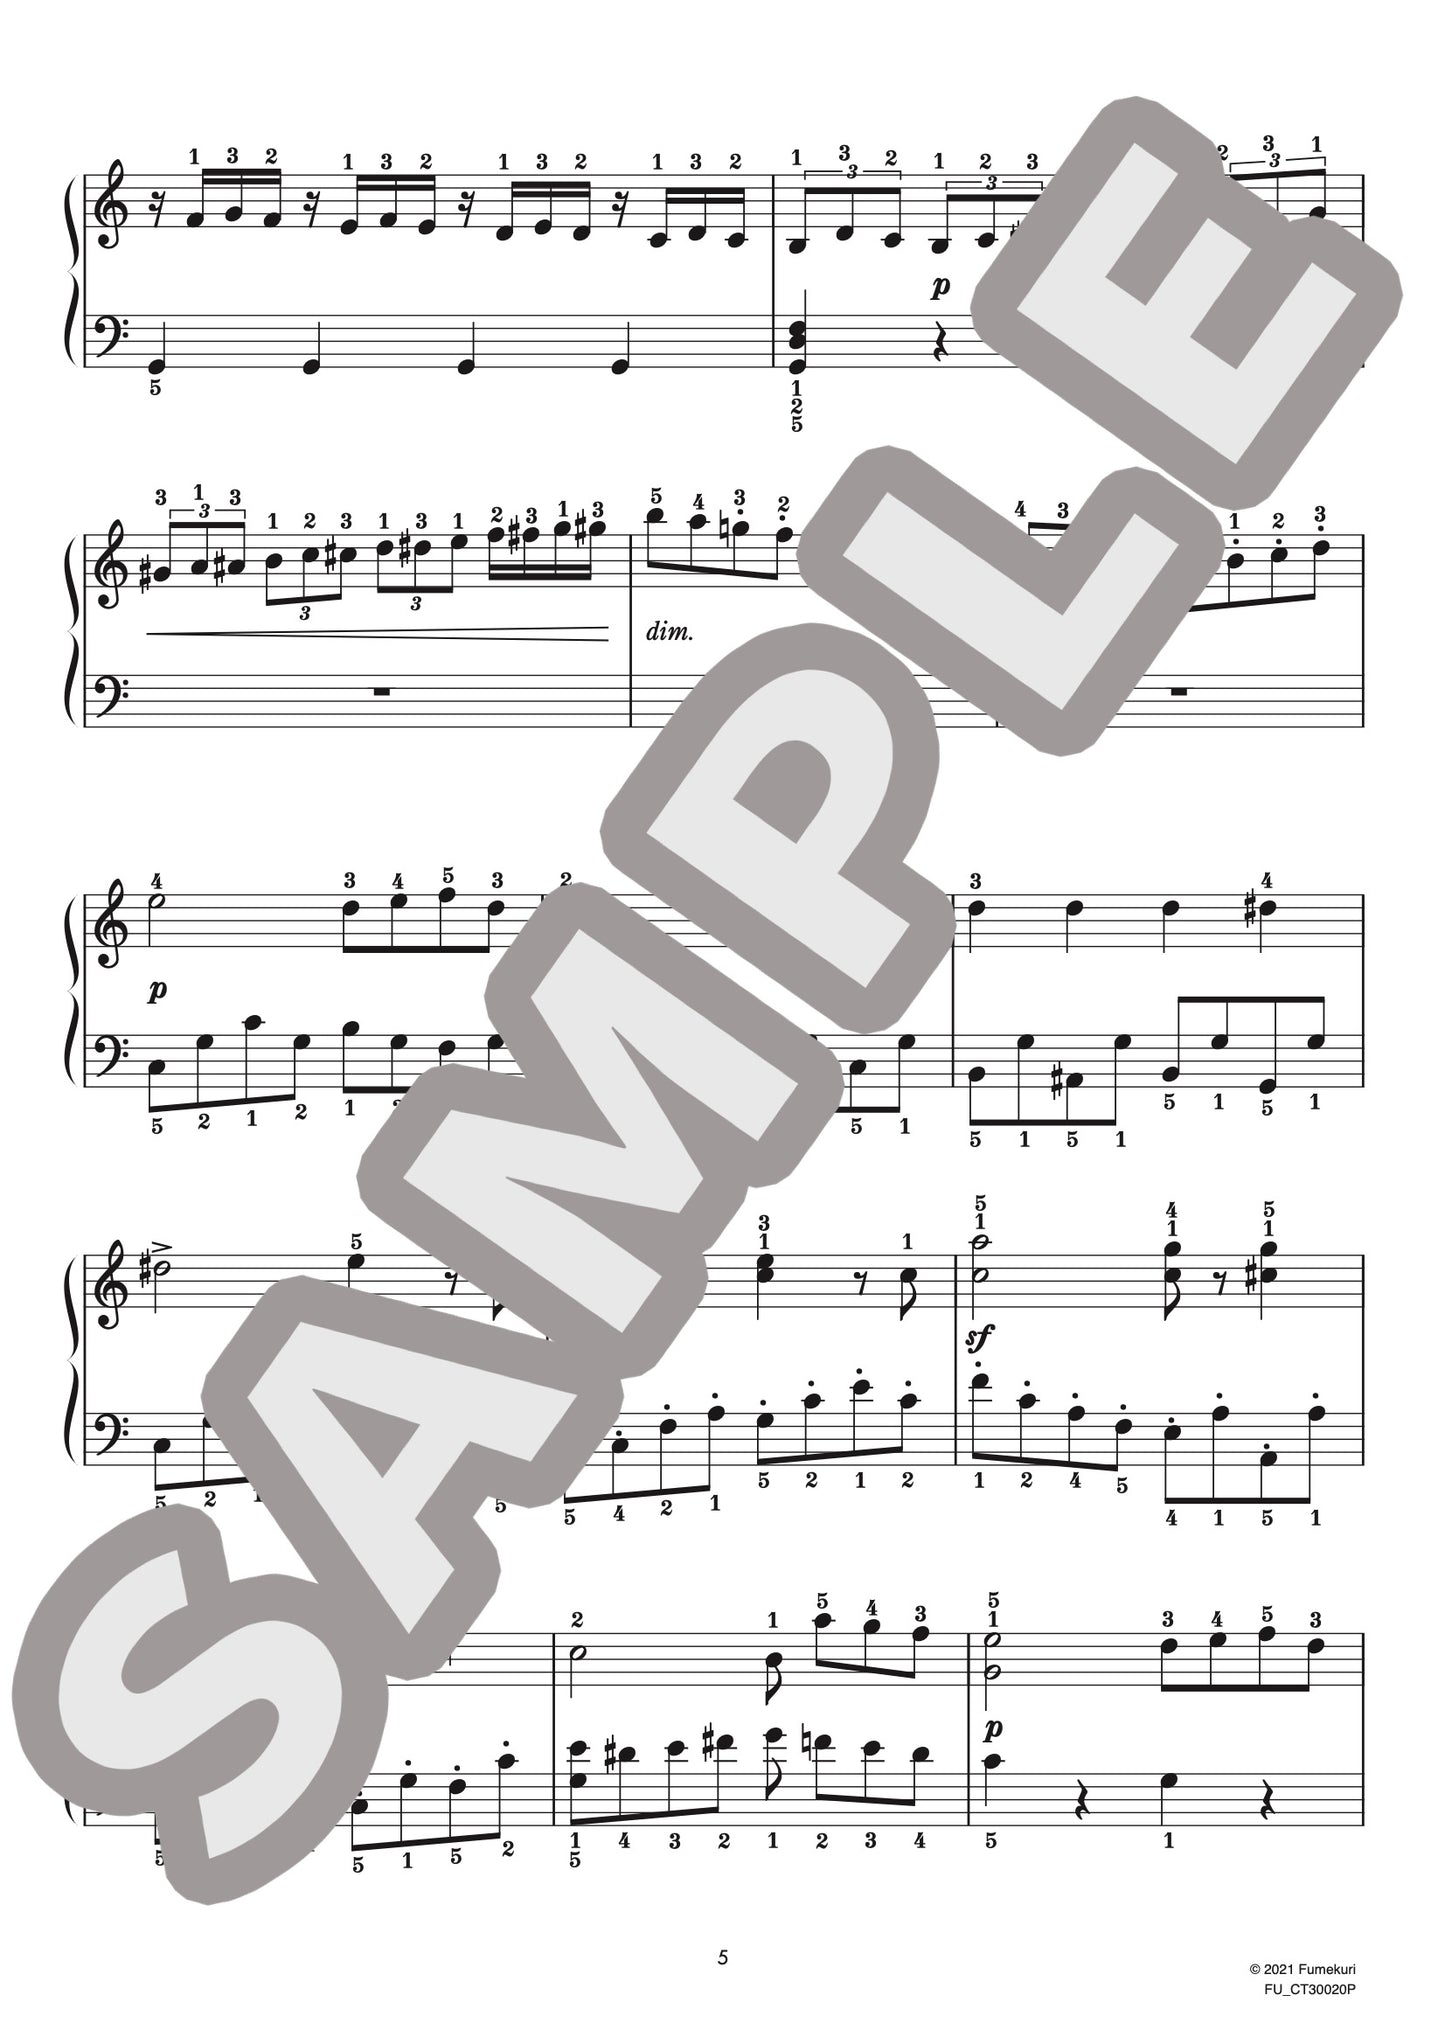 ピアノ協奏曲 第3番 第1楽章（ルートヴィヒ・ヴァン・ベートーヴェン) / クラシック・オリジナル楽曲【初中級】